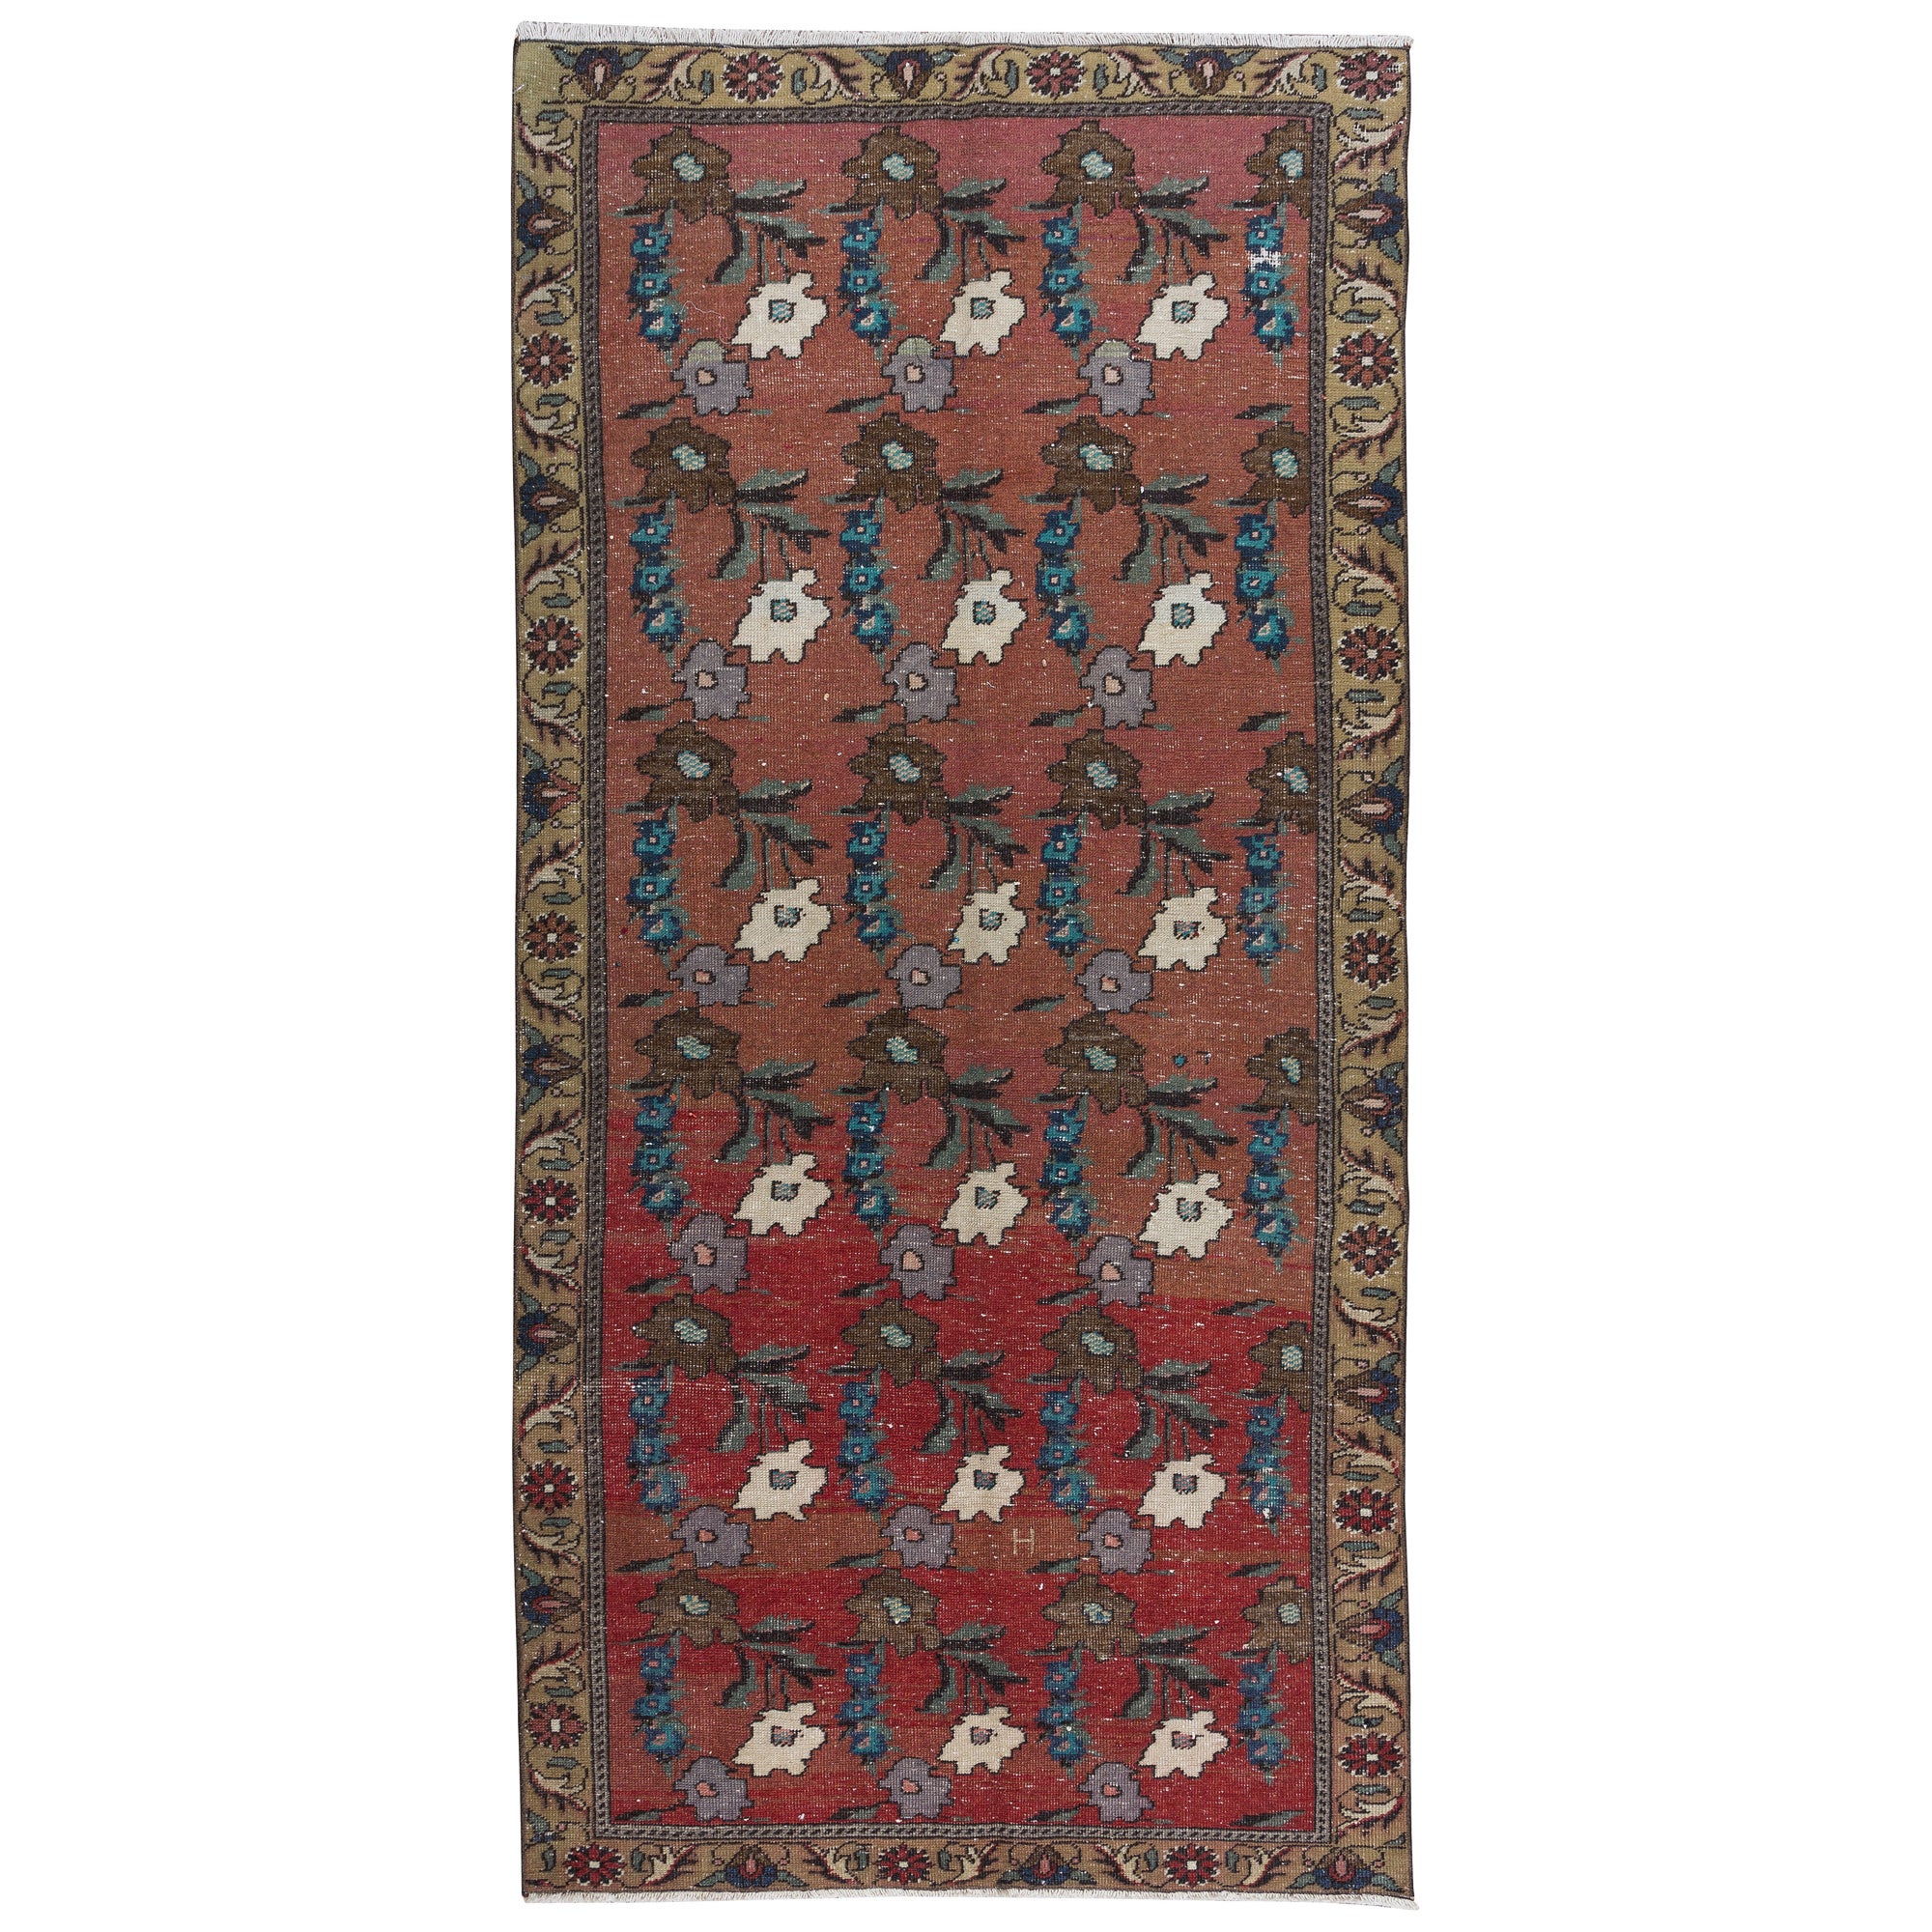 3.9x8.4 Ft Vintage Handmade Floral Patterned Turkish Rug in Red, Blue & Beige